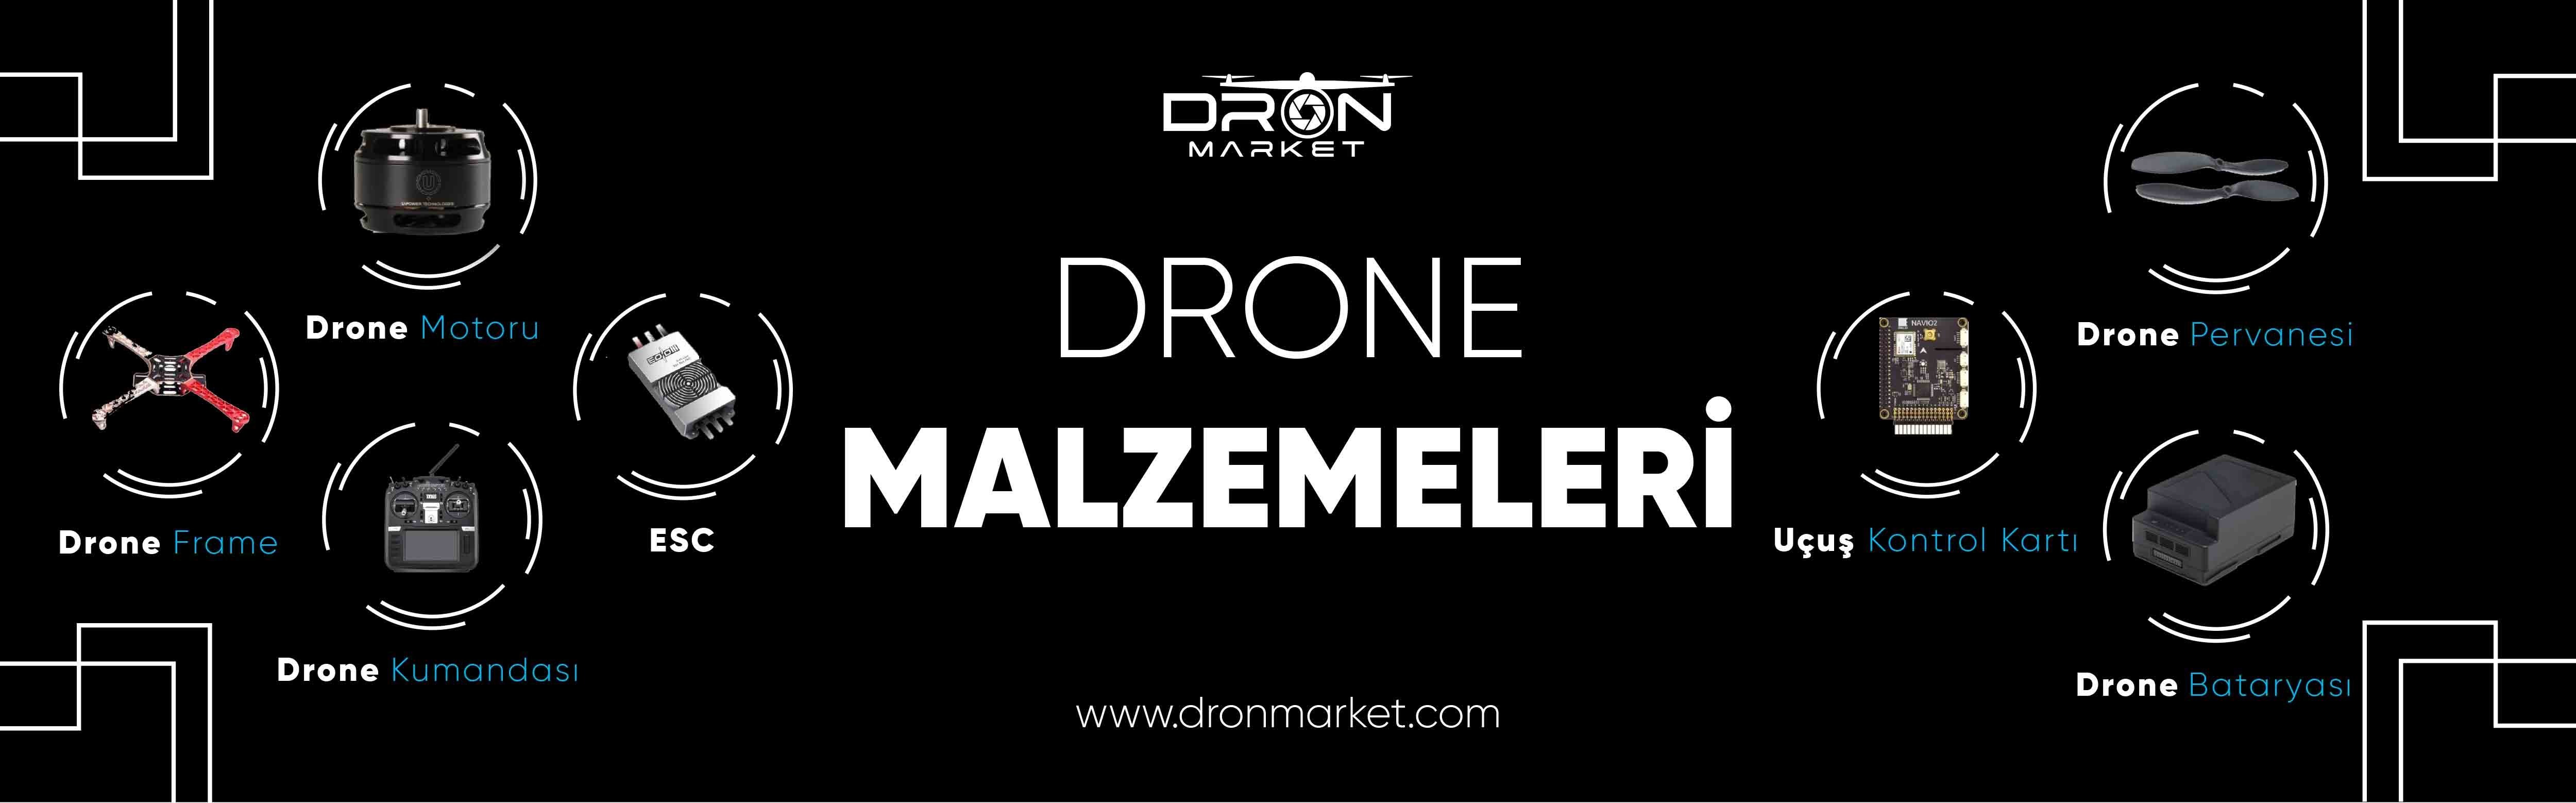 drone malzemeleri dronmarket.com'da